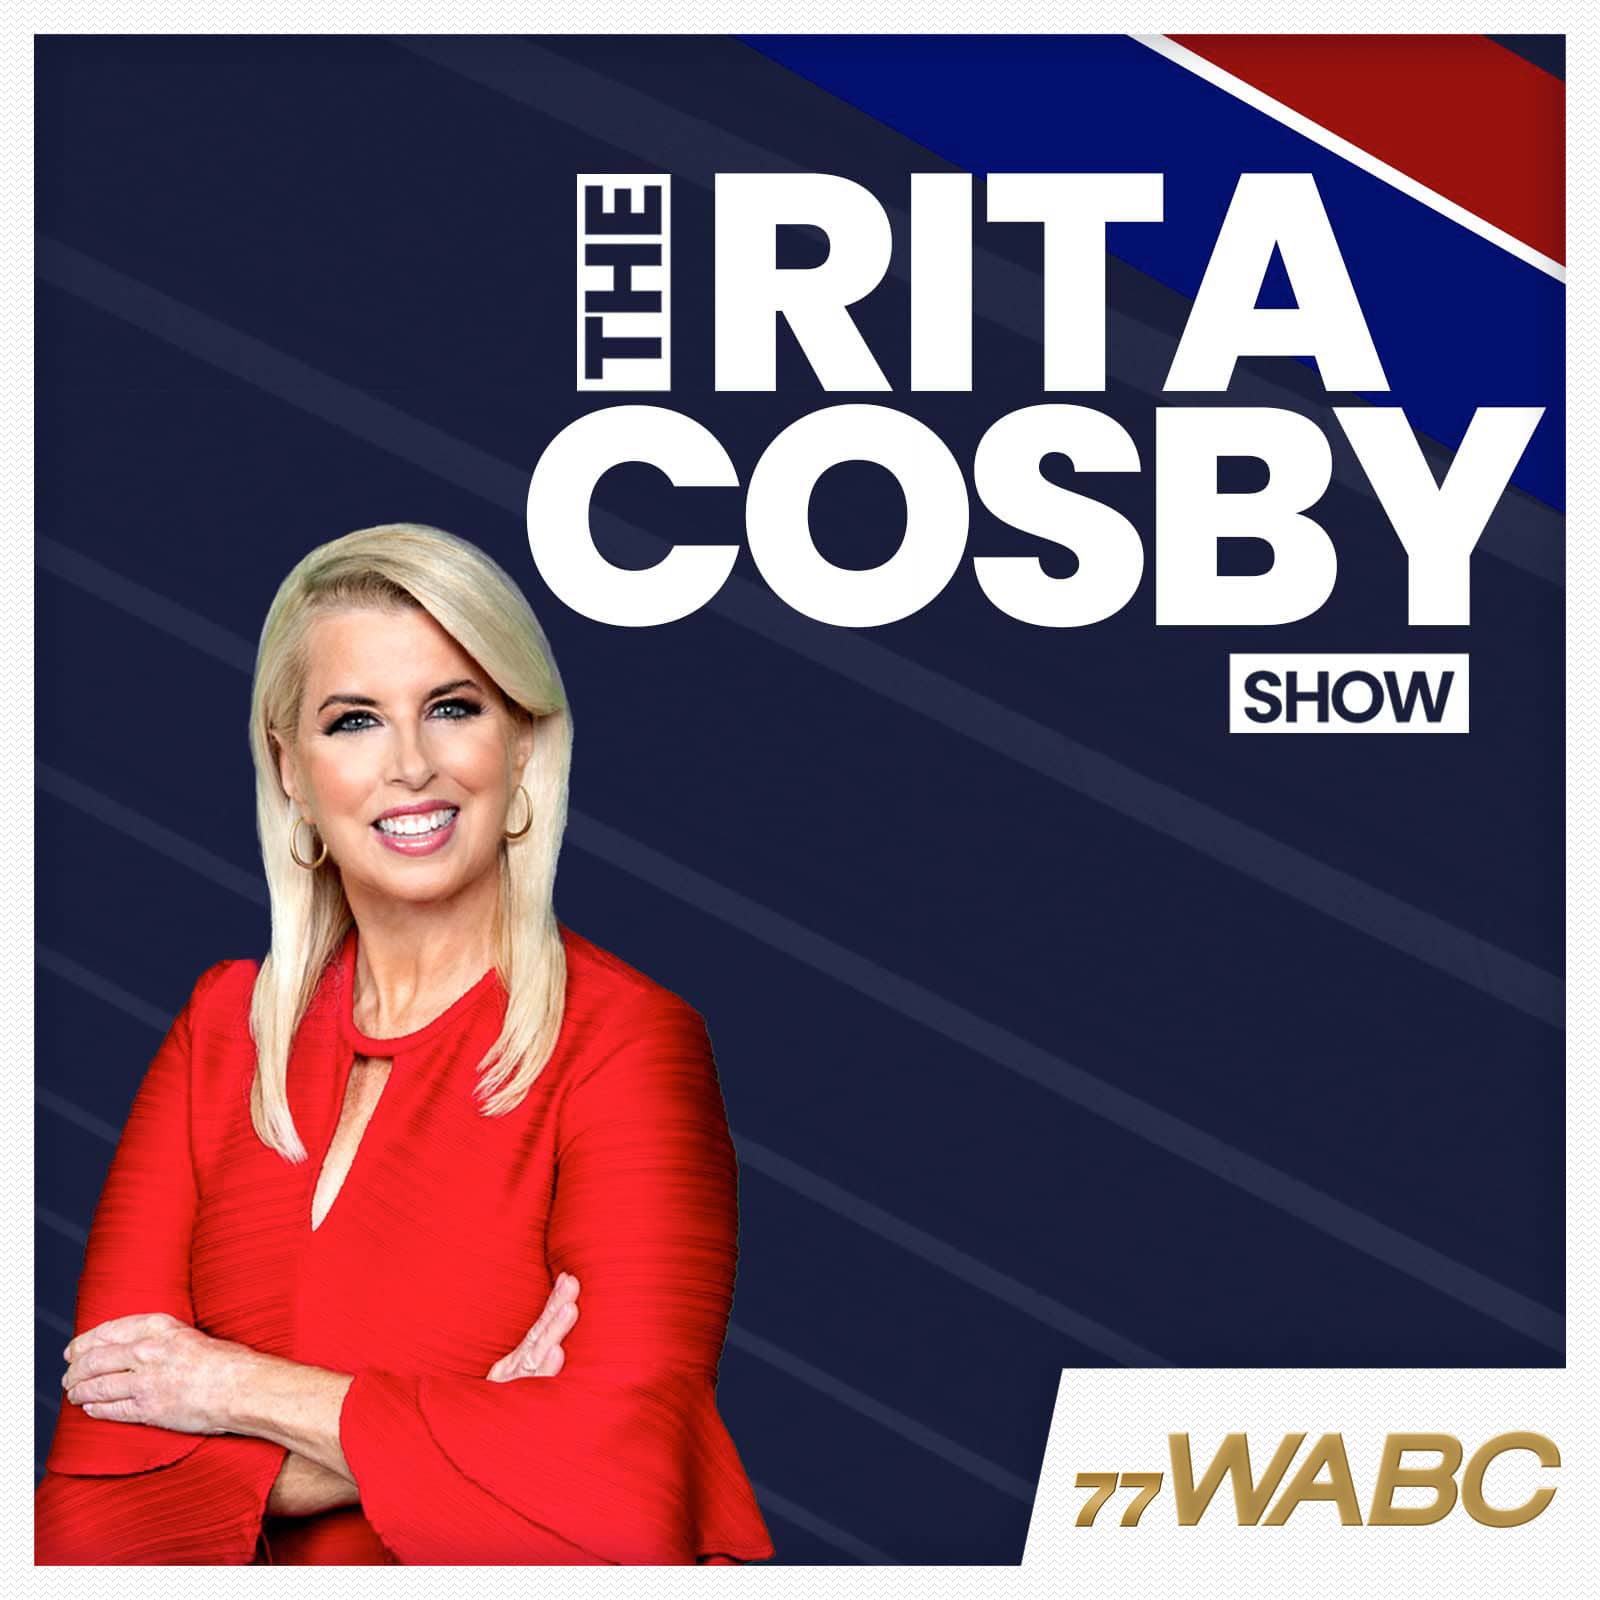 rita-cosby-podcast-new-logo-209